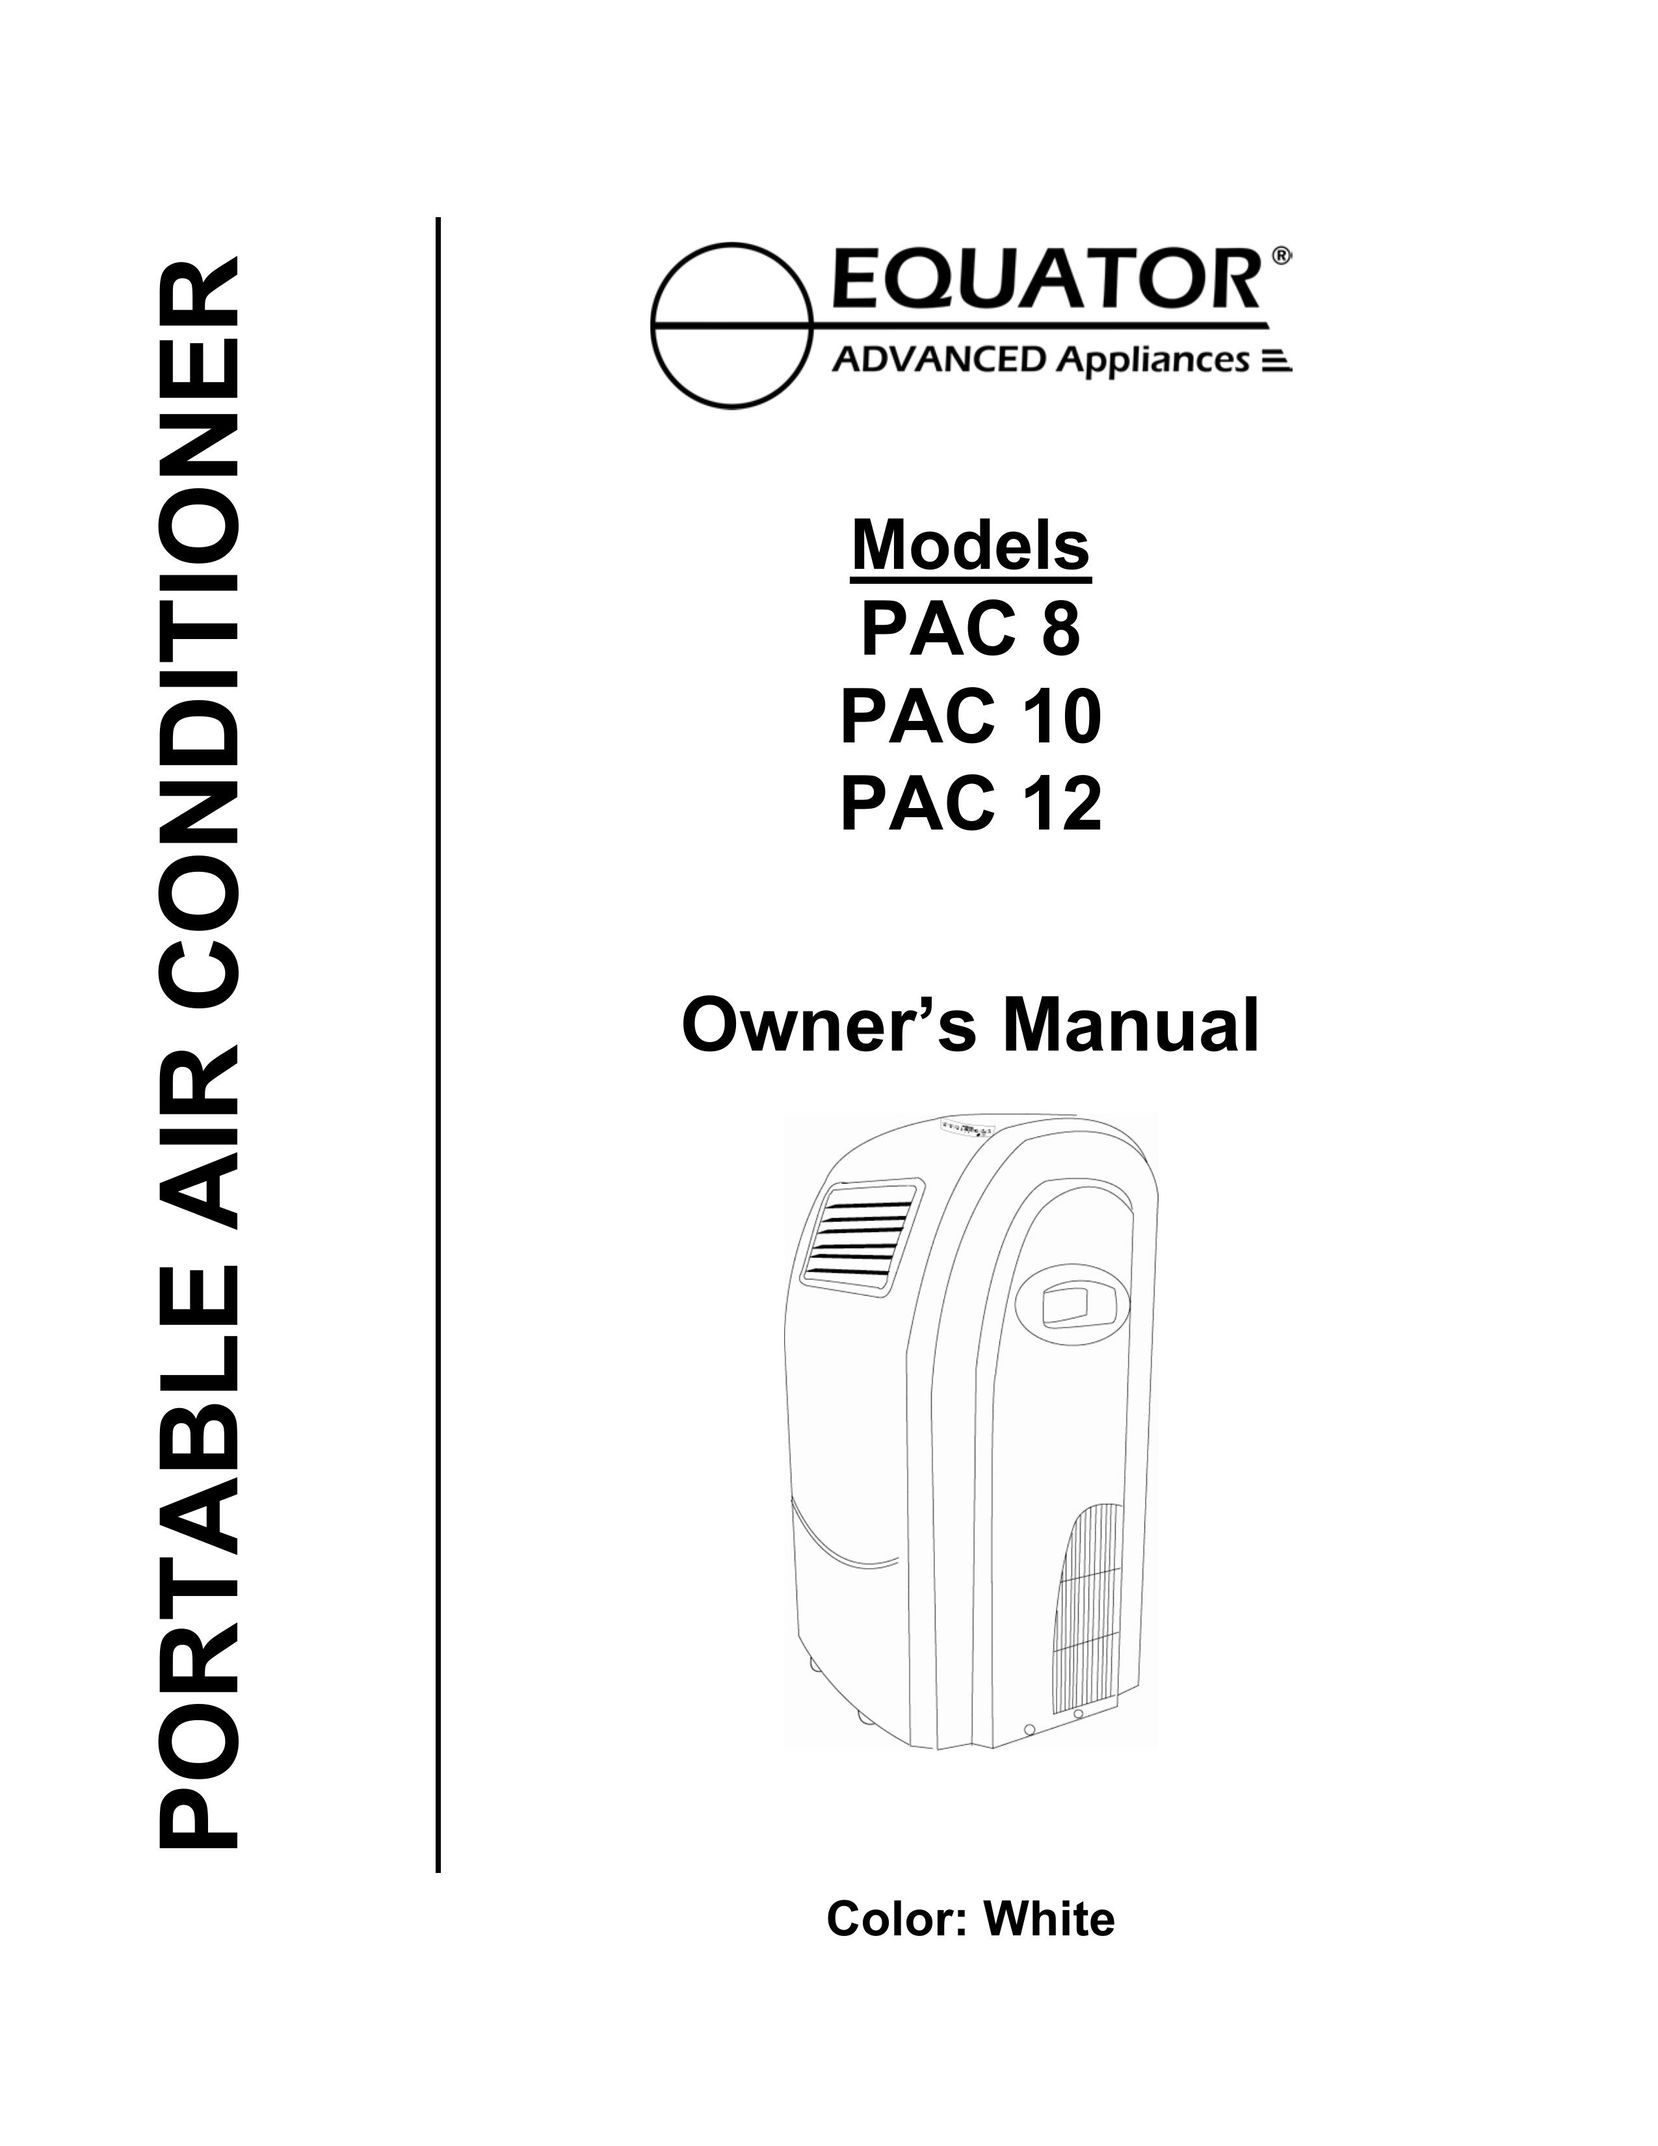 Equator PAC 8 Air Conditioner User Manual